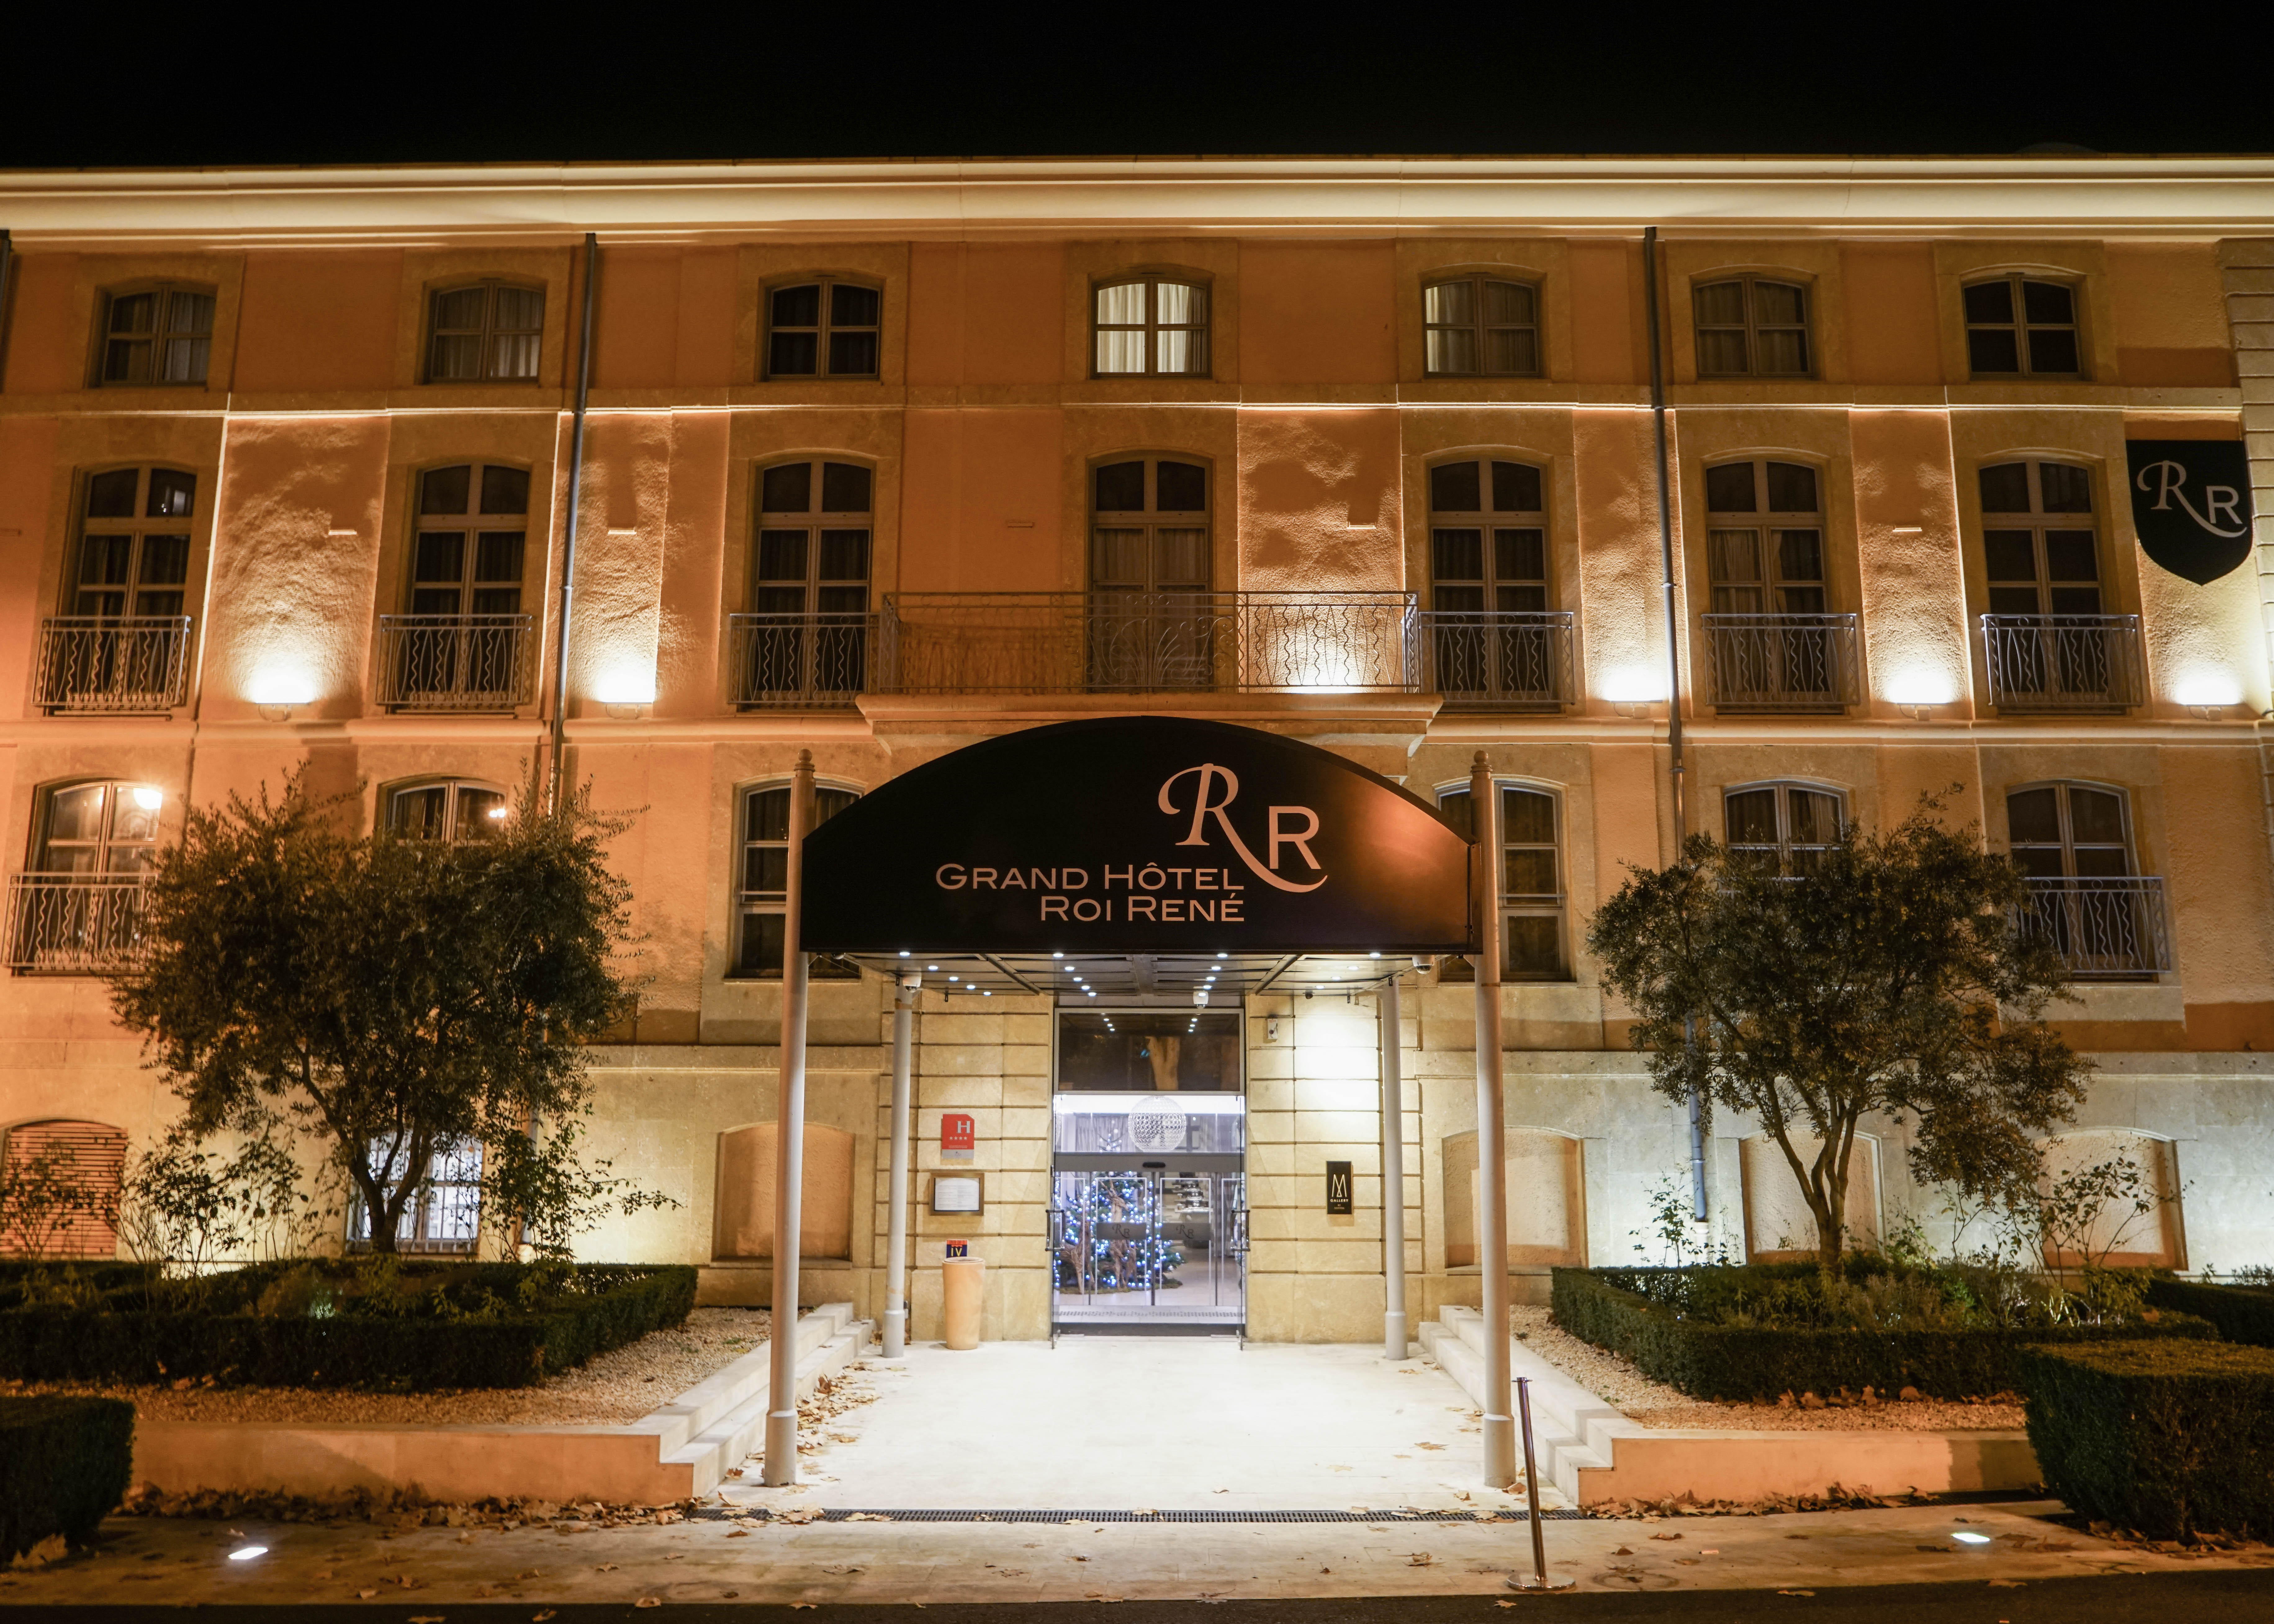 Grand Hotel Roi René